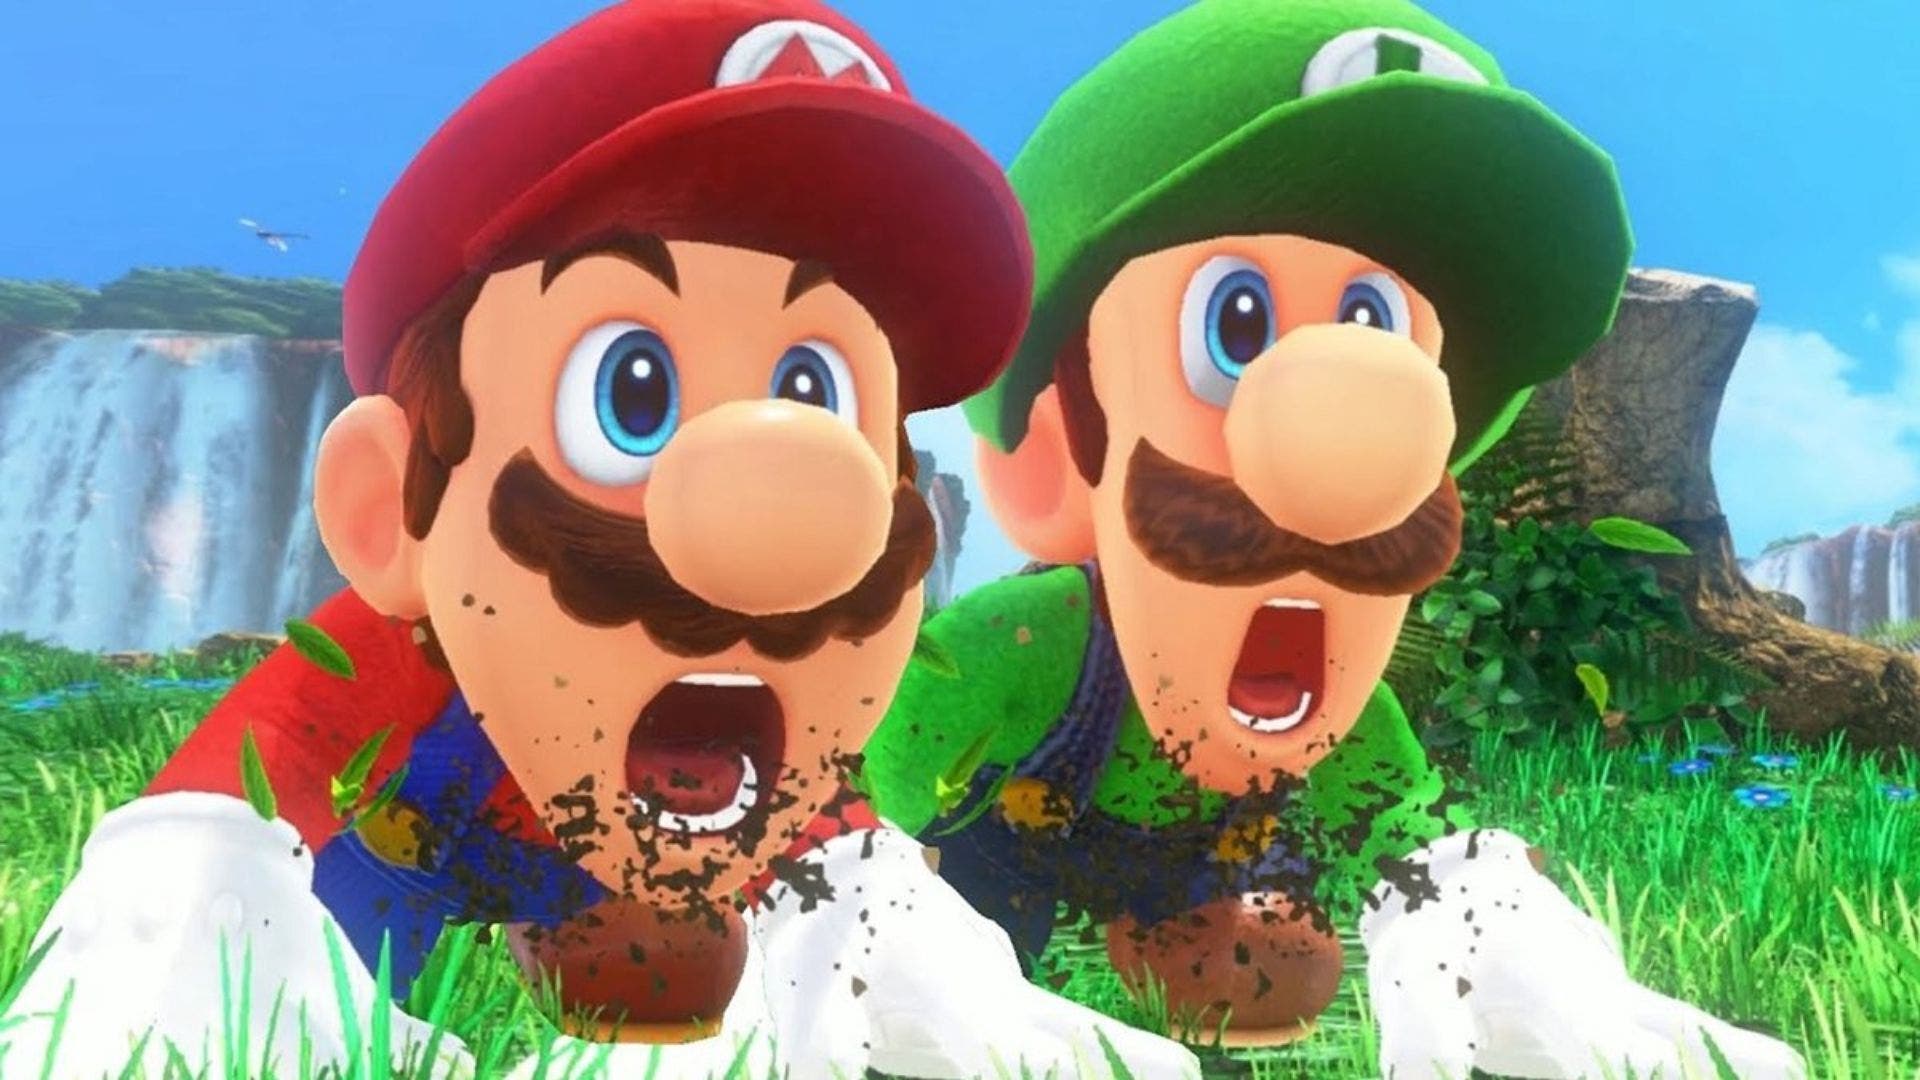 Echa un vistazo a este extraño y peligroso coleccionable de Super Mario del que no se sabe mucho